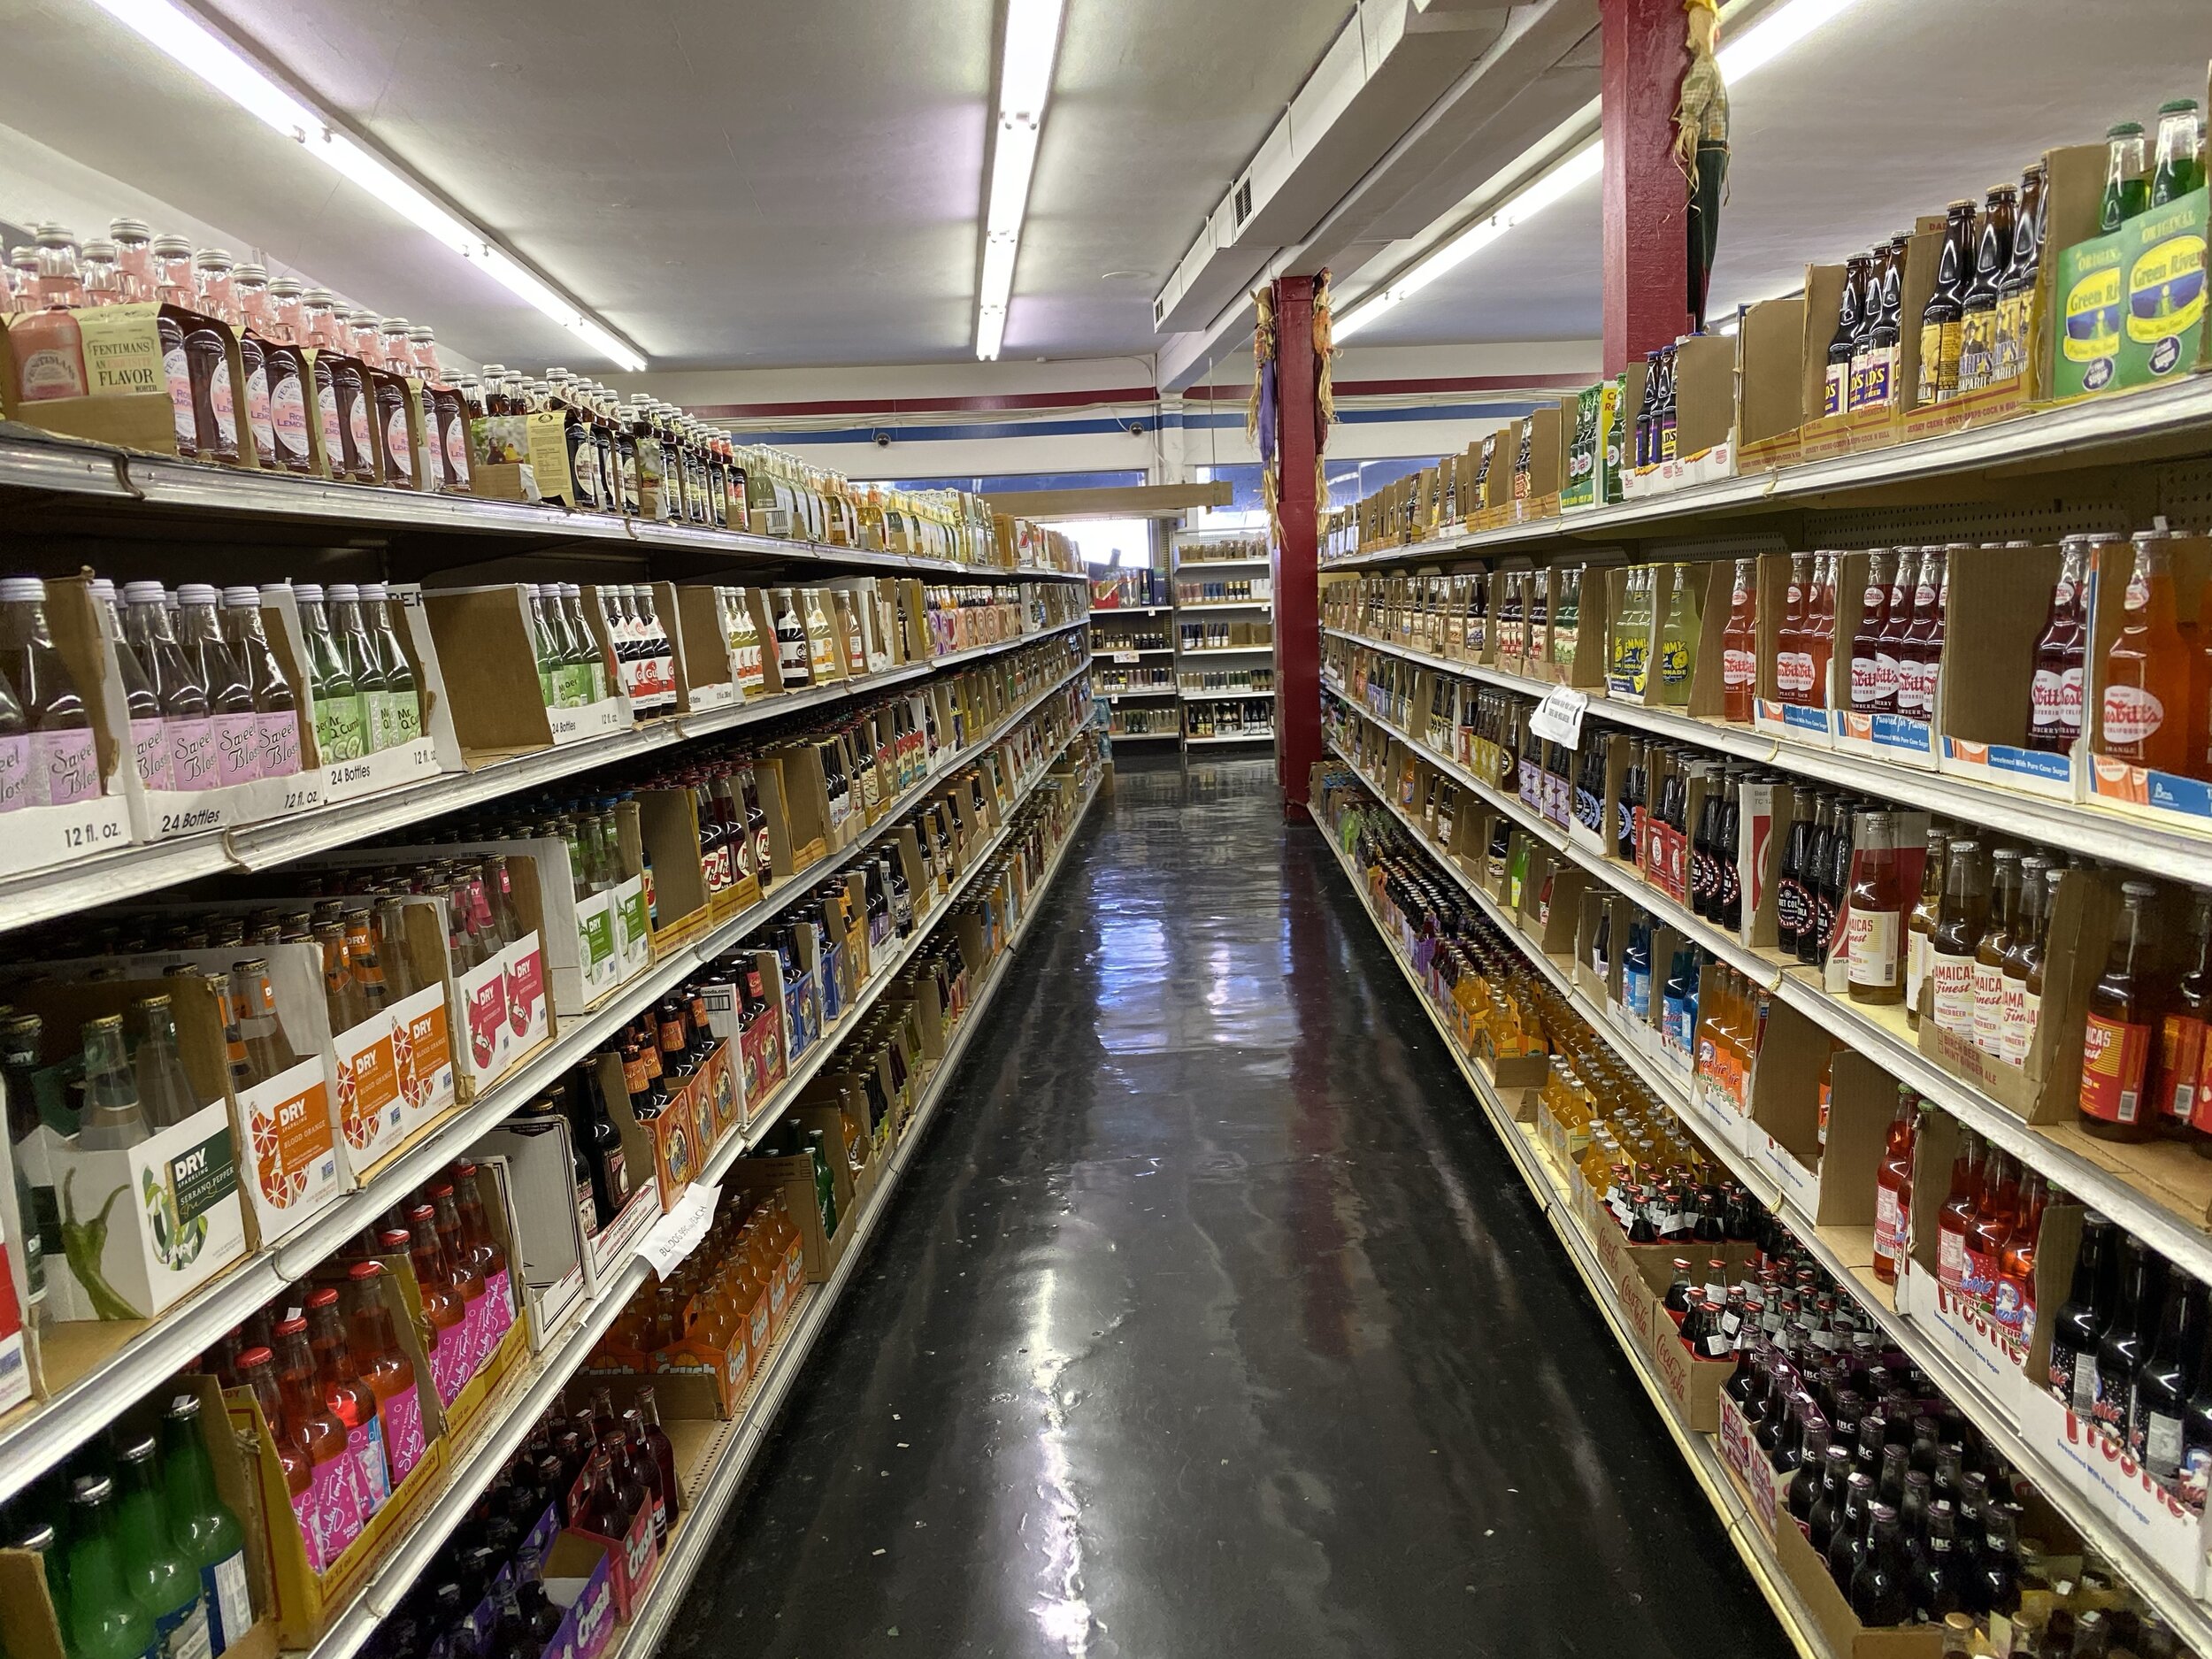 Galco's Soda — California By Choice